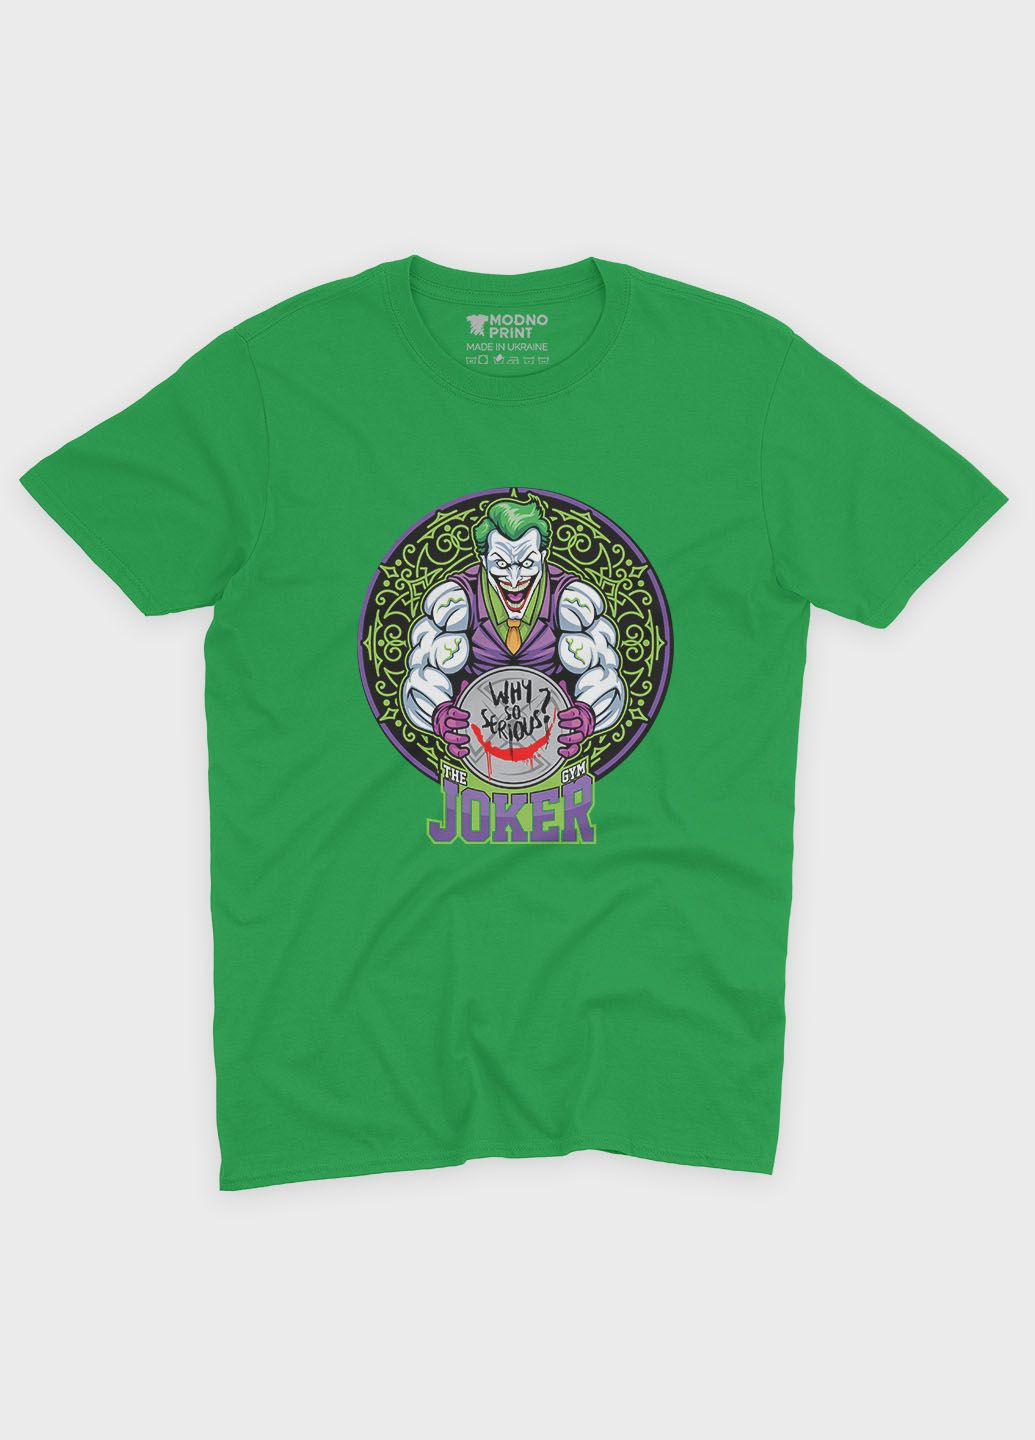 Зеленая демисезонная футболка для девочки с принтом супервора - джокер (ts001-1-keg-006-005-013-g) Modno